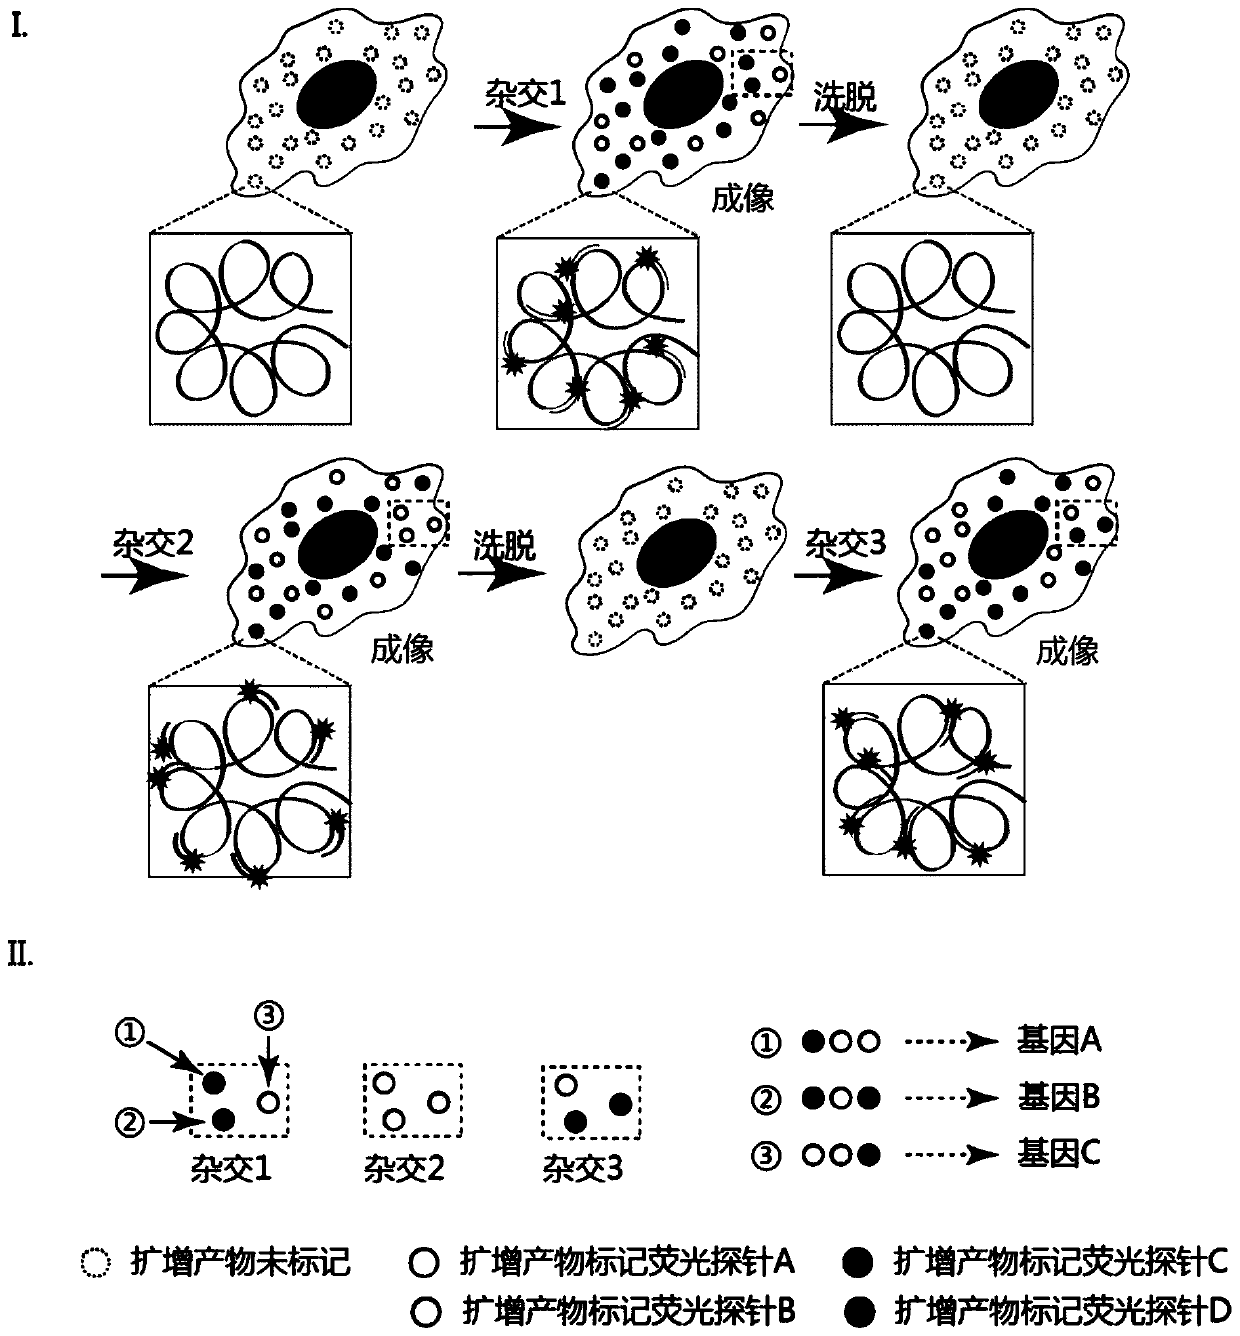 In-situ multiplex nucleic acid detection method